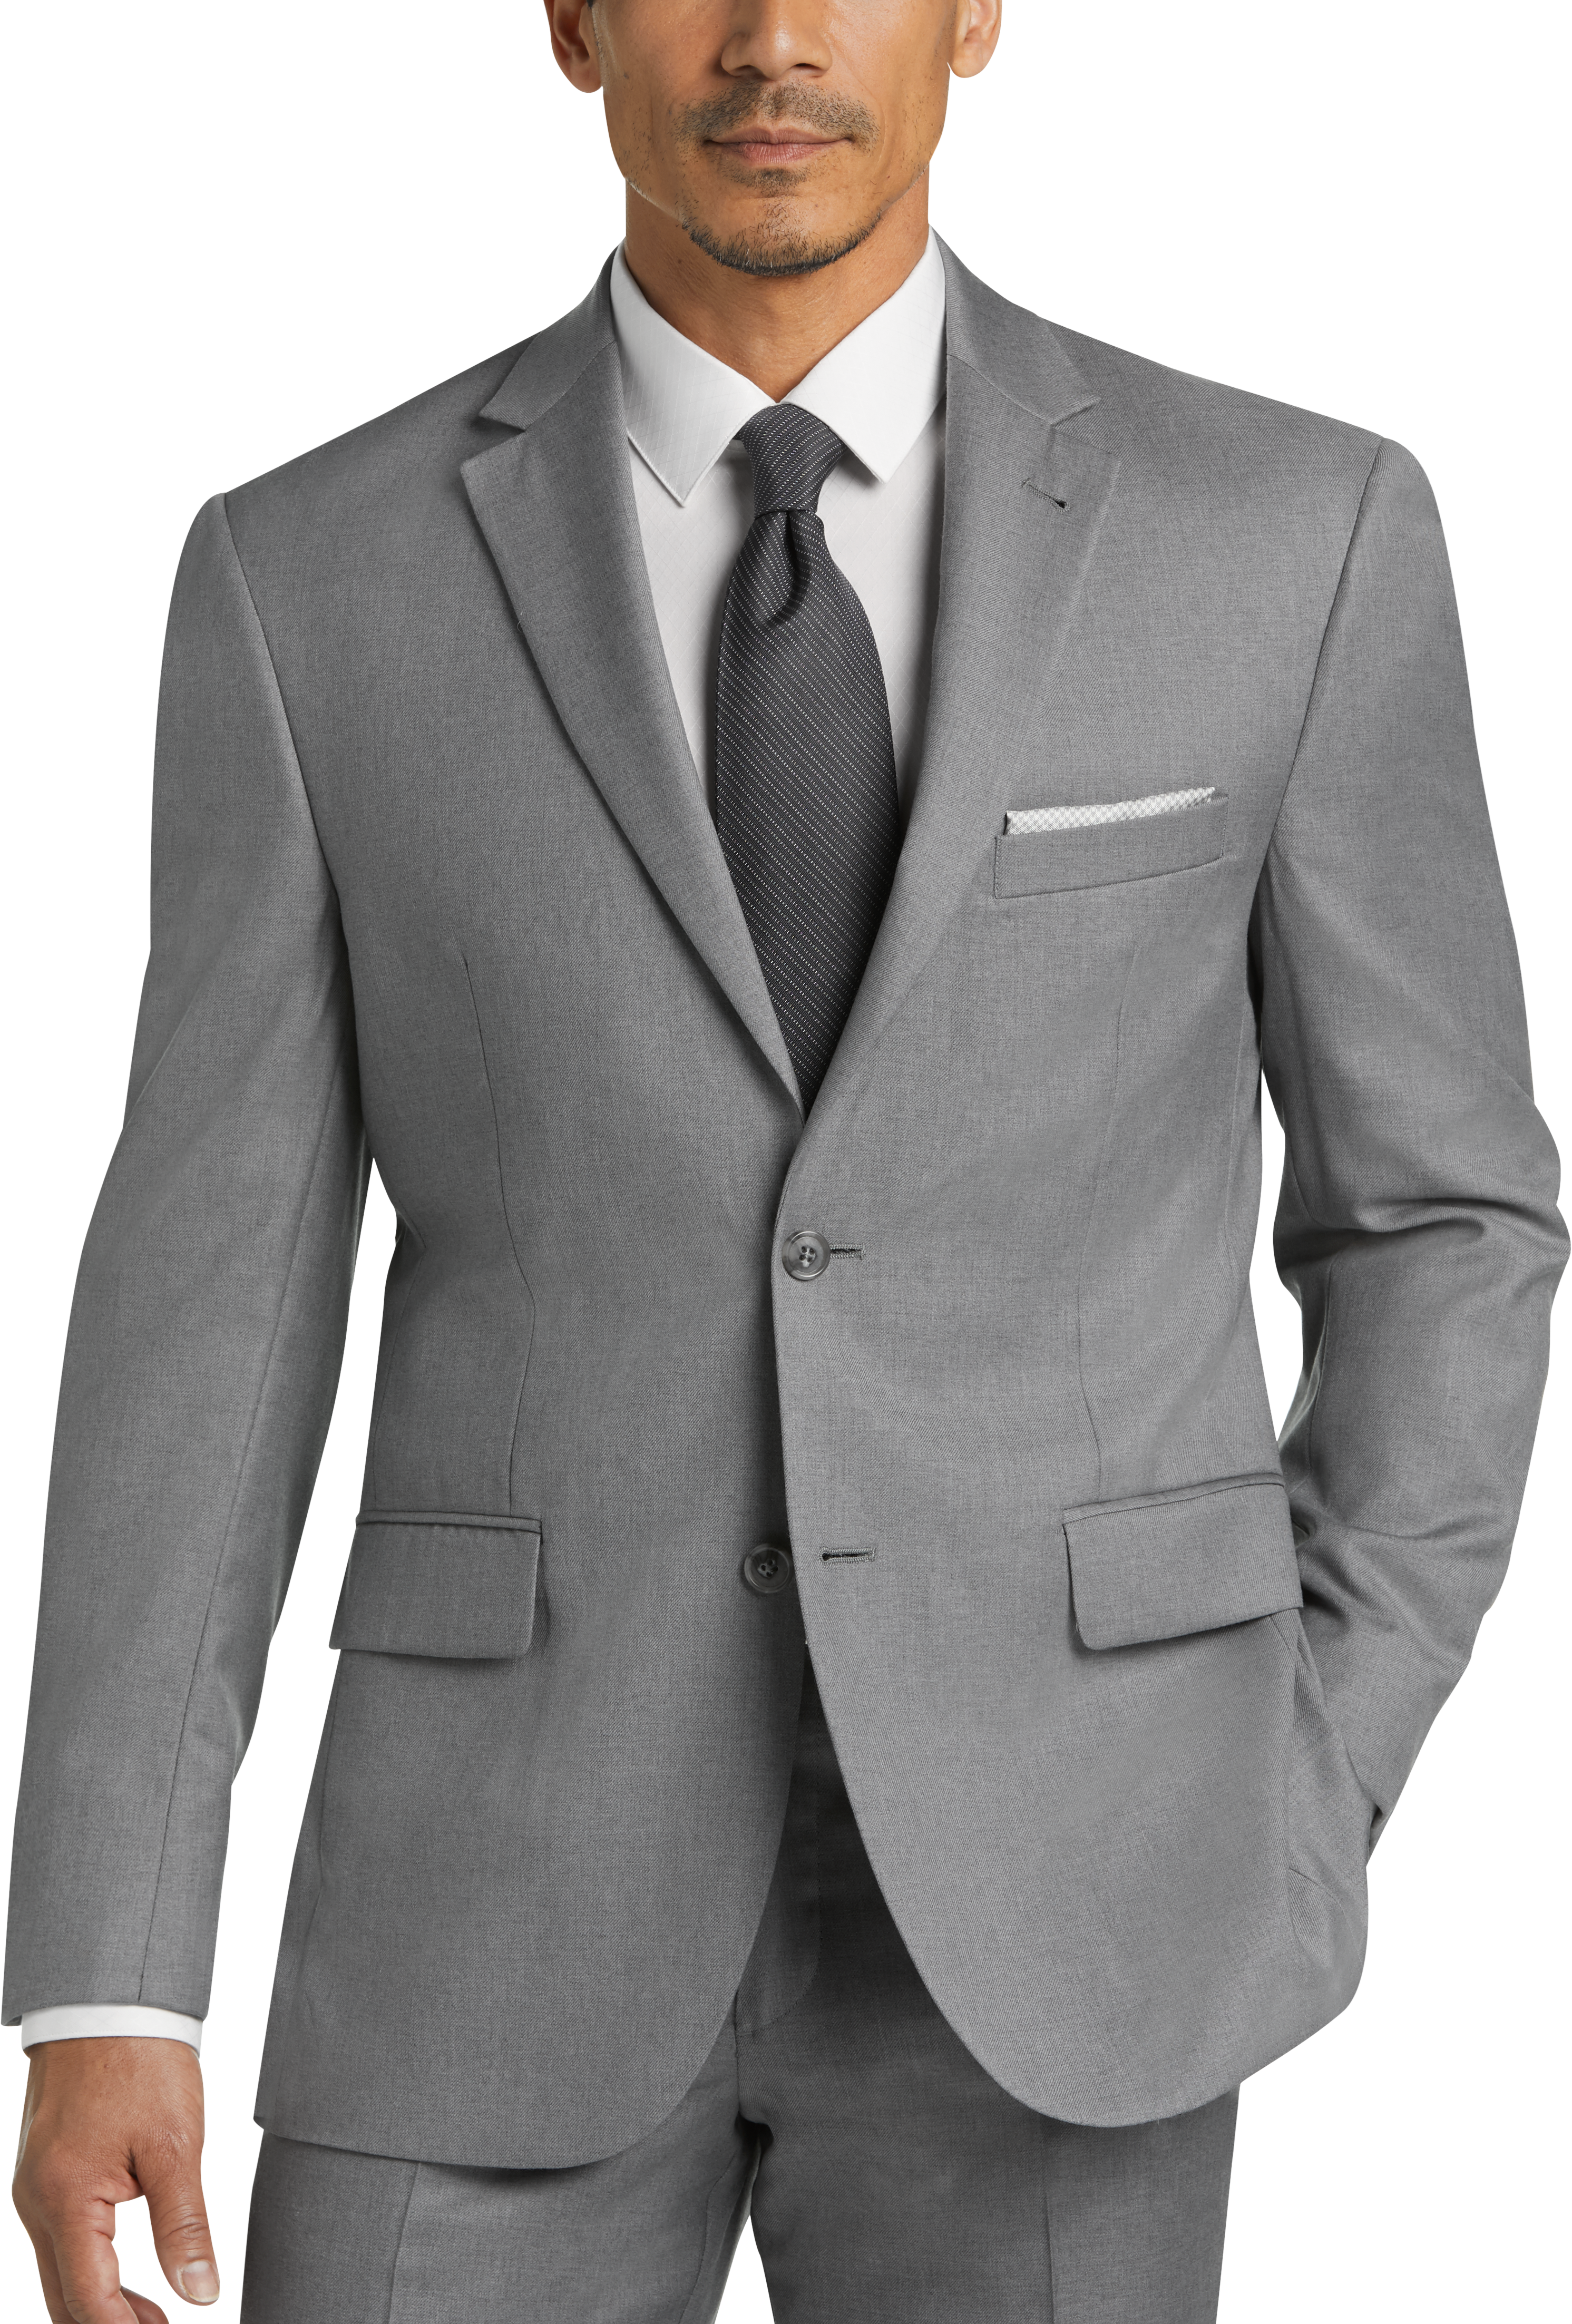 JOE Joseph Abboud Light Gray Modern Fit Vested Suit - Men's Suits | Men ...